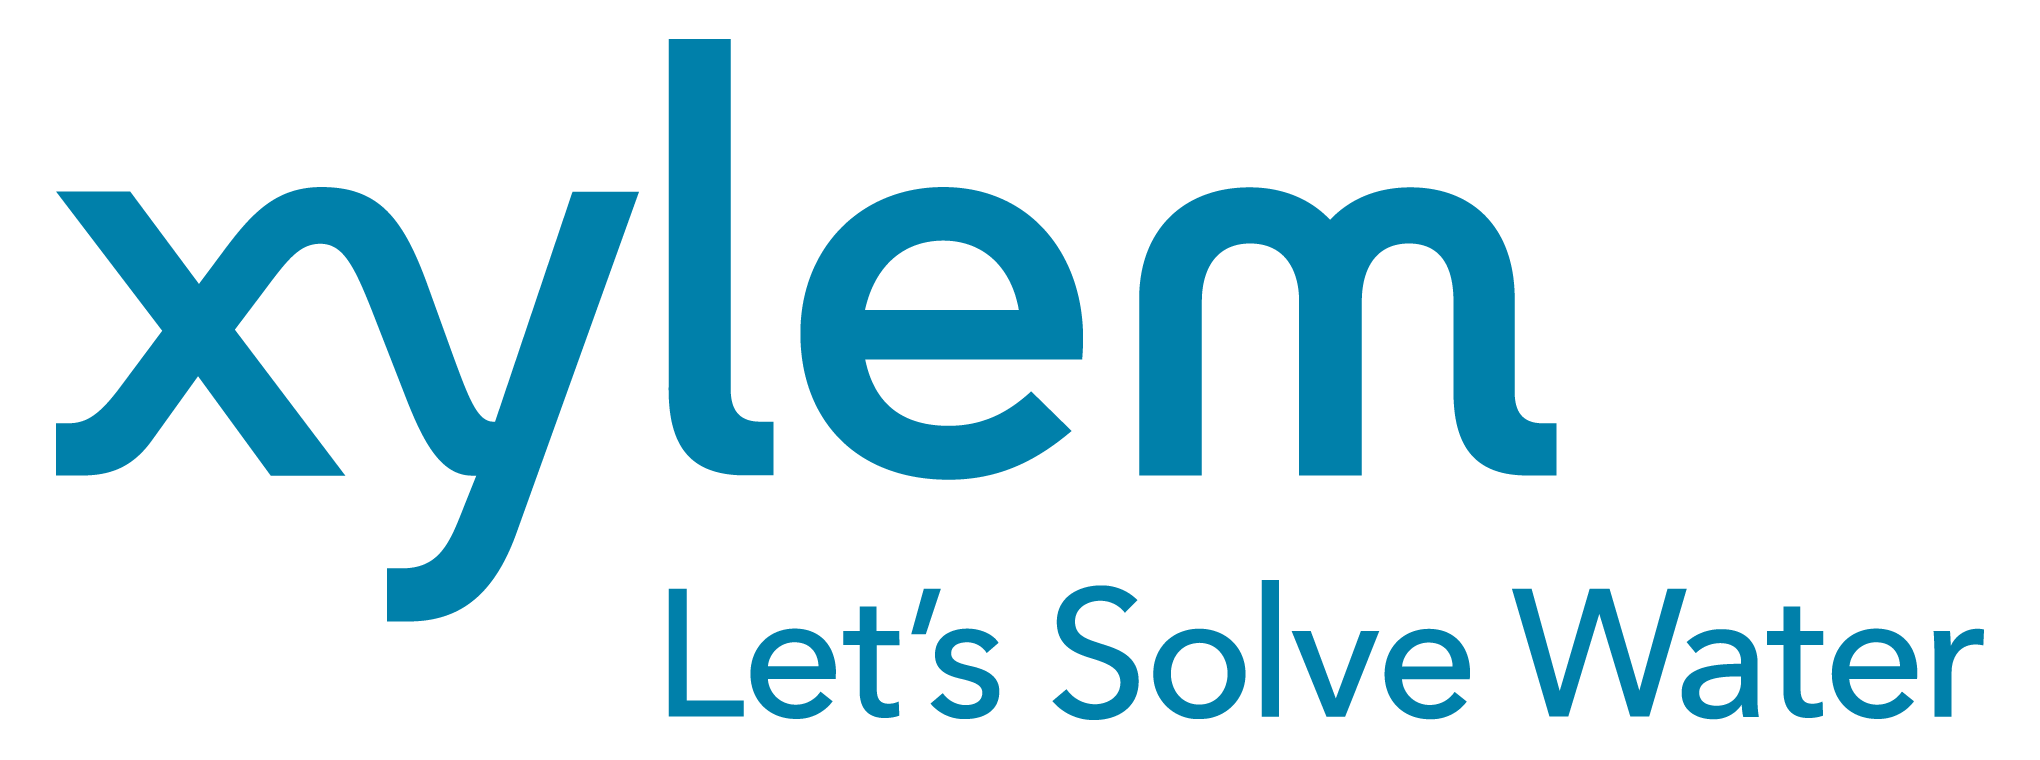 Xylem logo